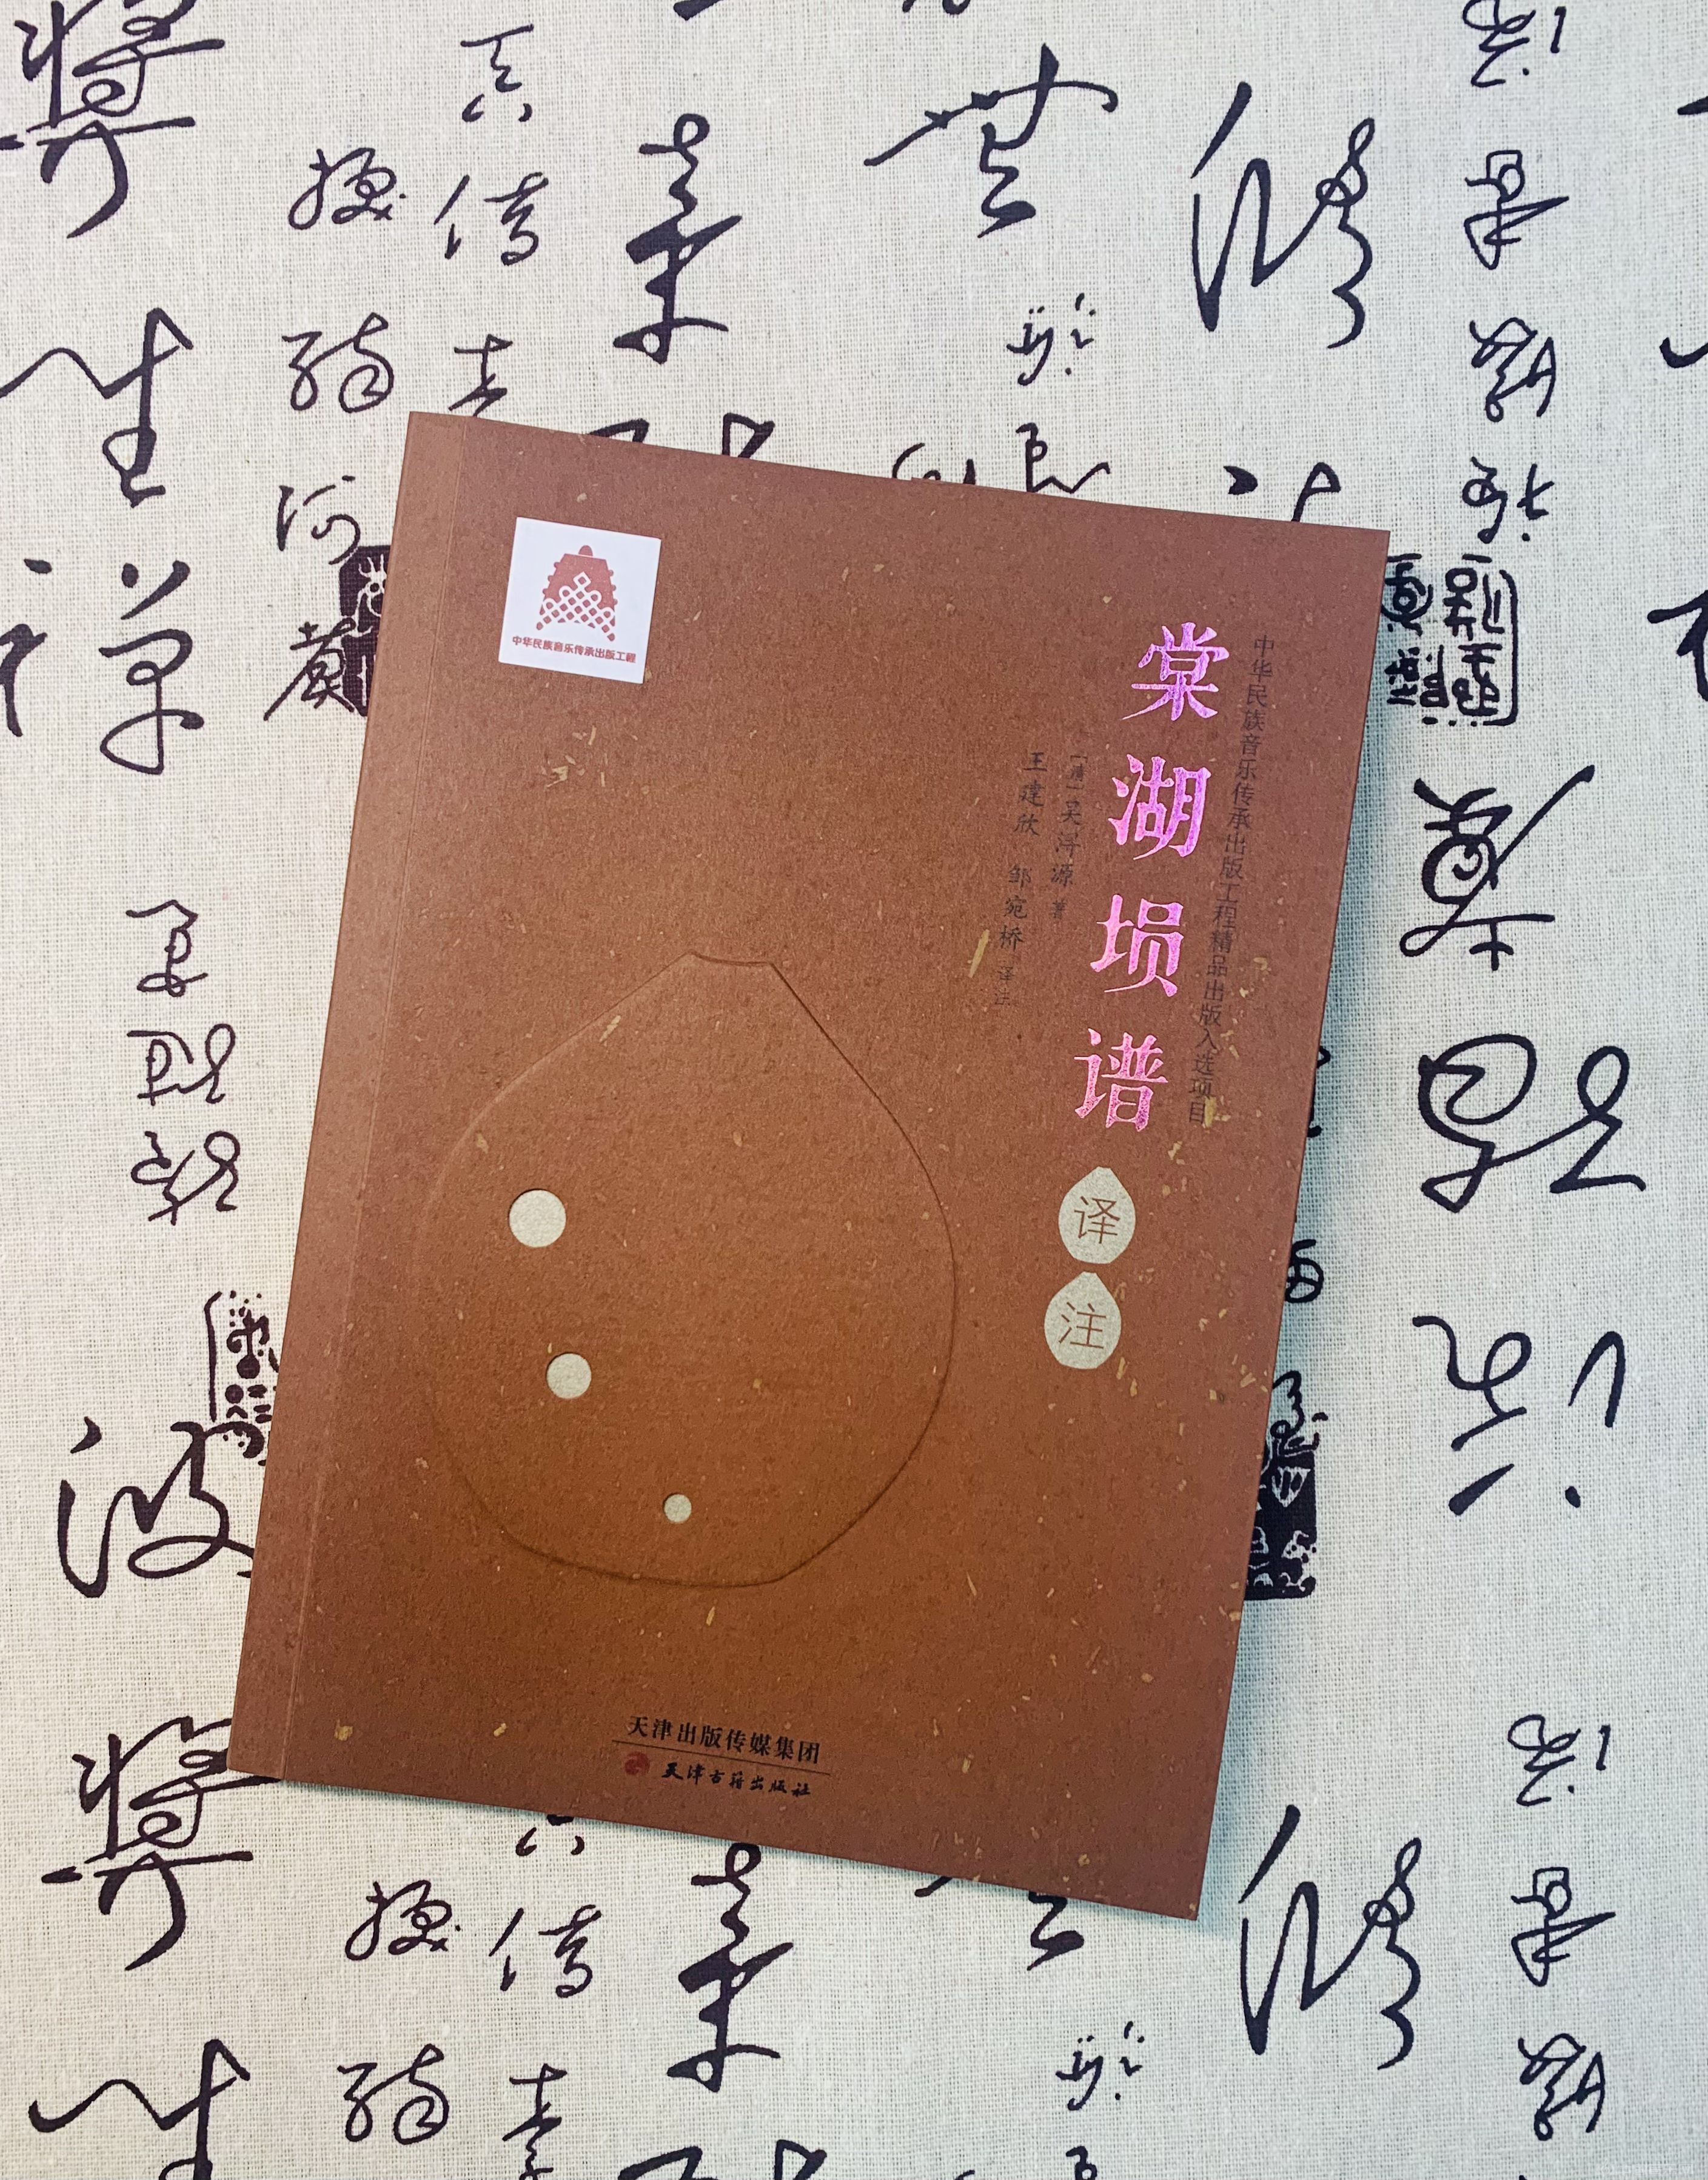 《棠湖埙谱译注》近日由天津古籍出版社出版发行